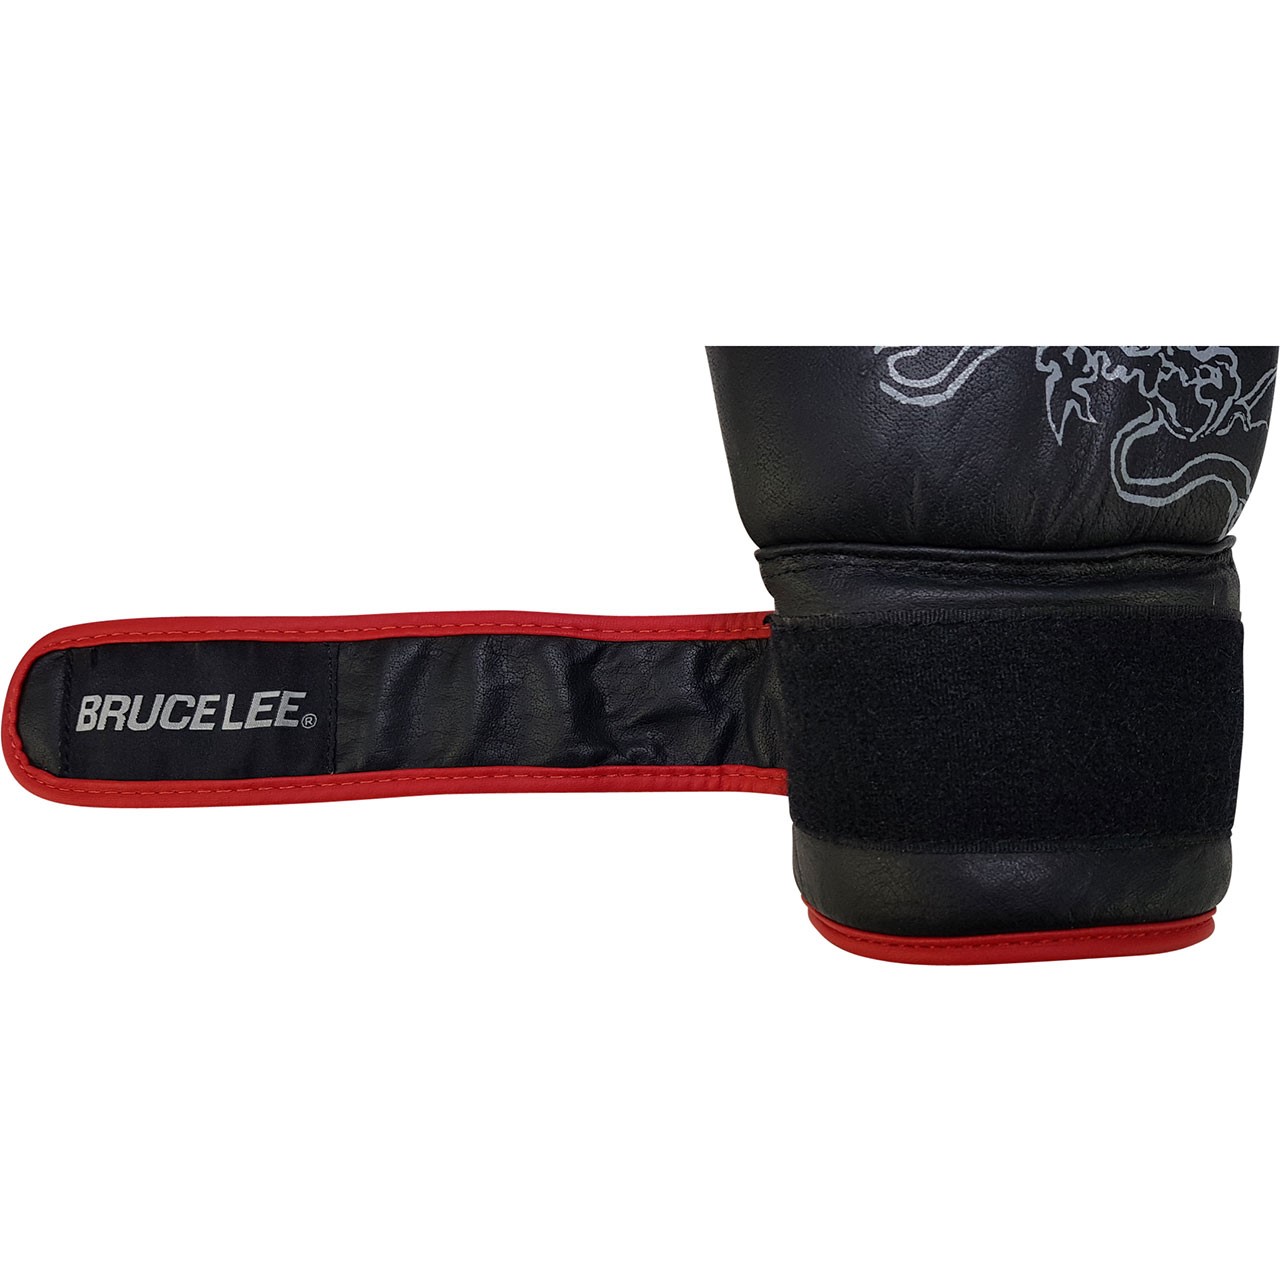 Bruce Lee Deluxe Bag & Sparring Gloves